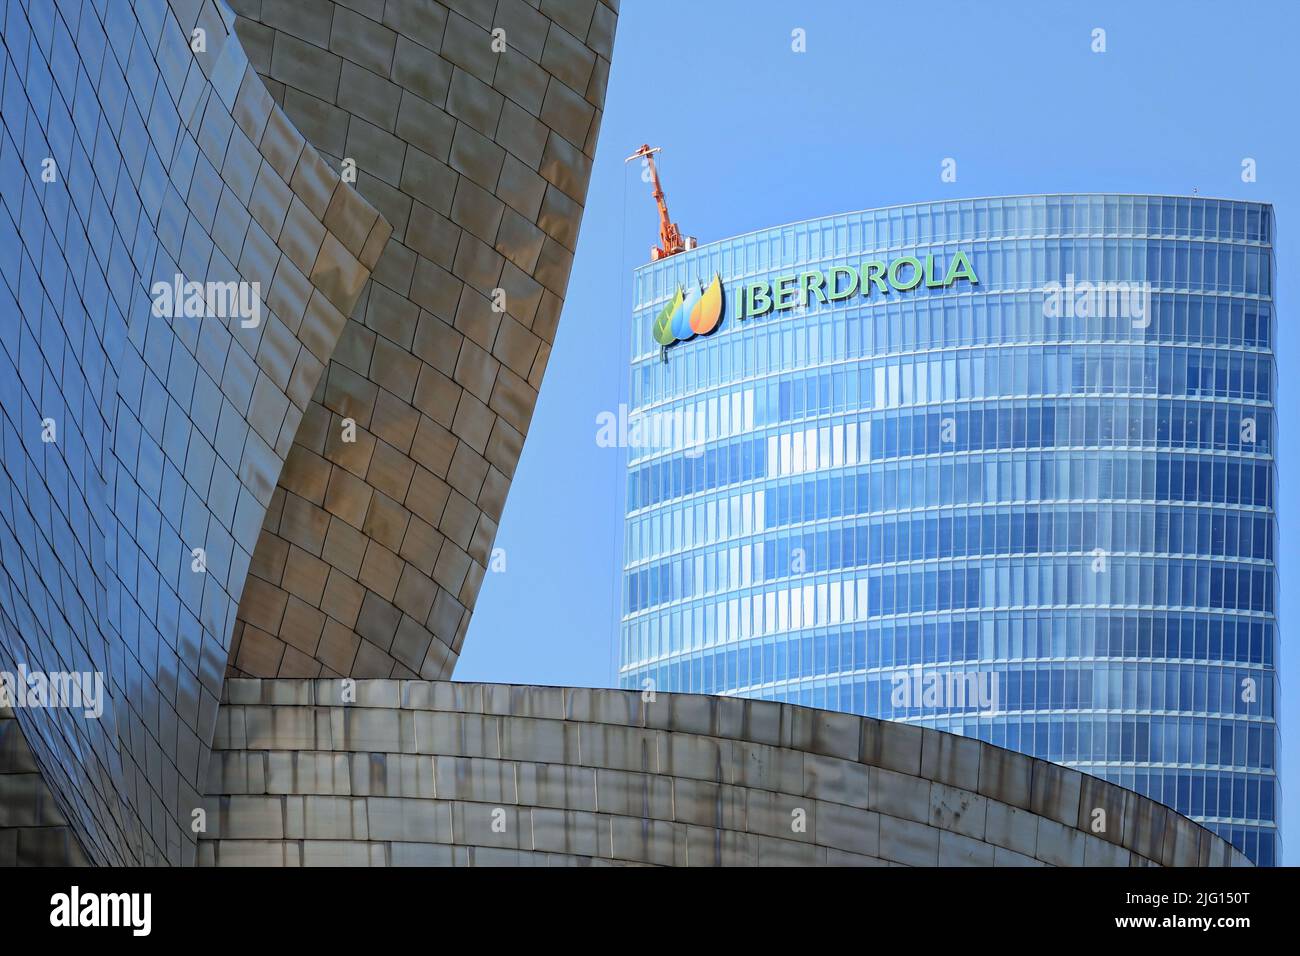 La tour Iberdrola est un gratte-ciel de 165 mètres de haut situé à Bilbao, Espagne - août 2018 Banque D'Images